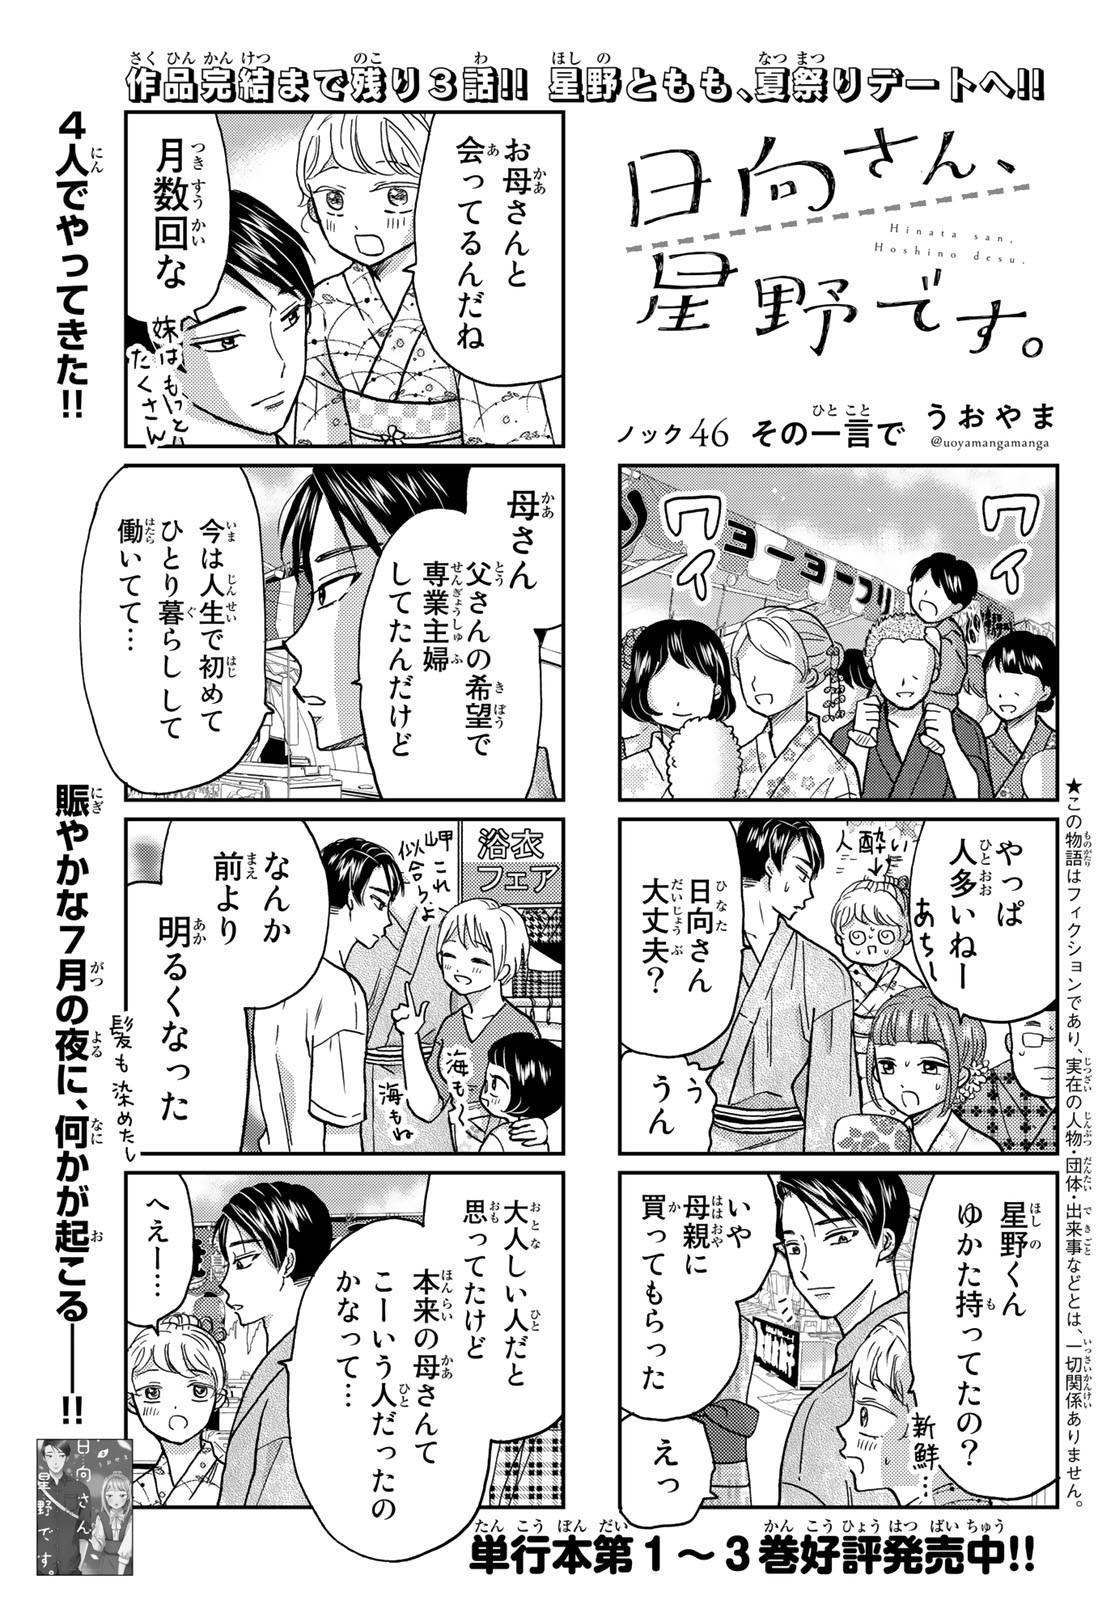 Hinata-san, Hoshino desu. - Chapter 046 - Page 1